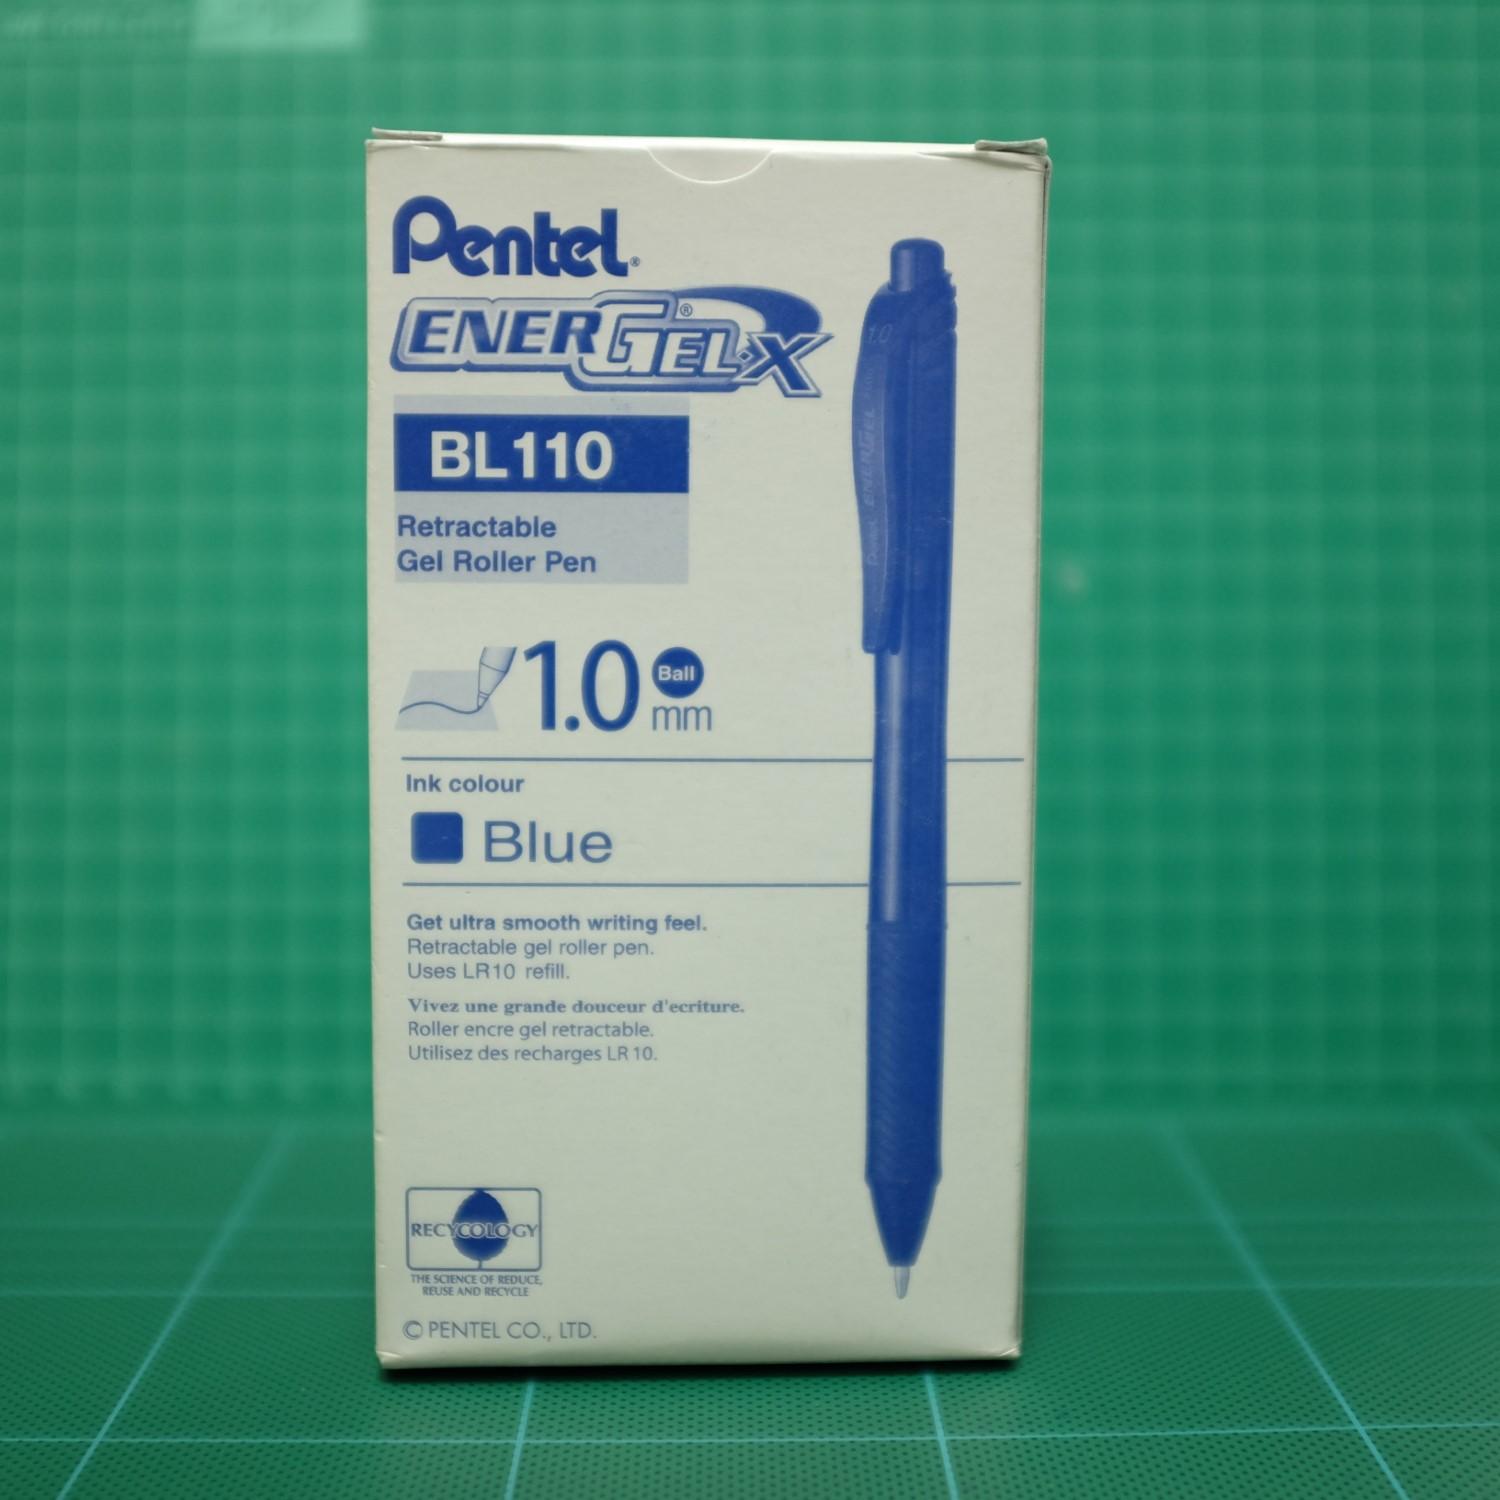 ปากกาหมึกเจล เพนเทล Pentel Energel X BL110 หัว 1.0mm หมึกสีน้ำเงิน (1กล่อง/12ด้าม)